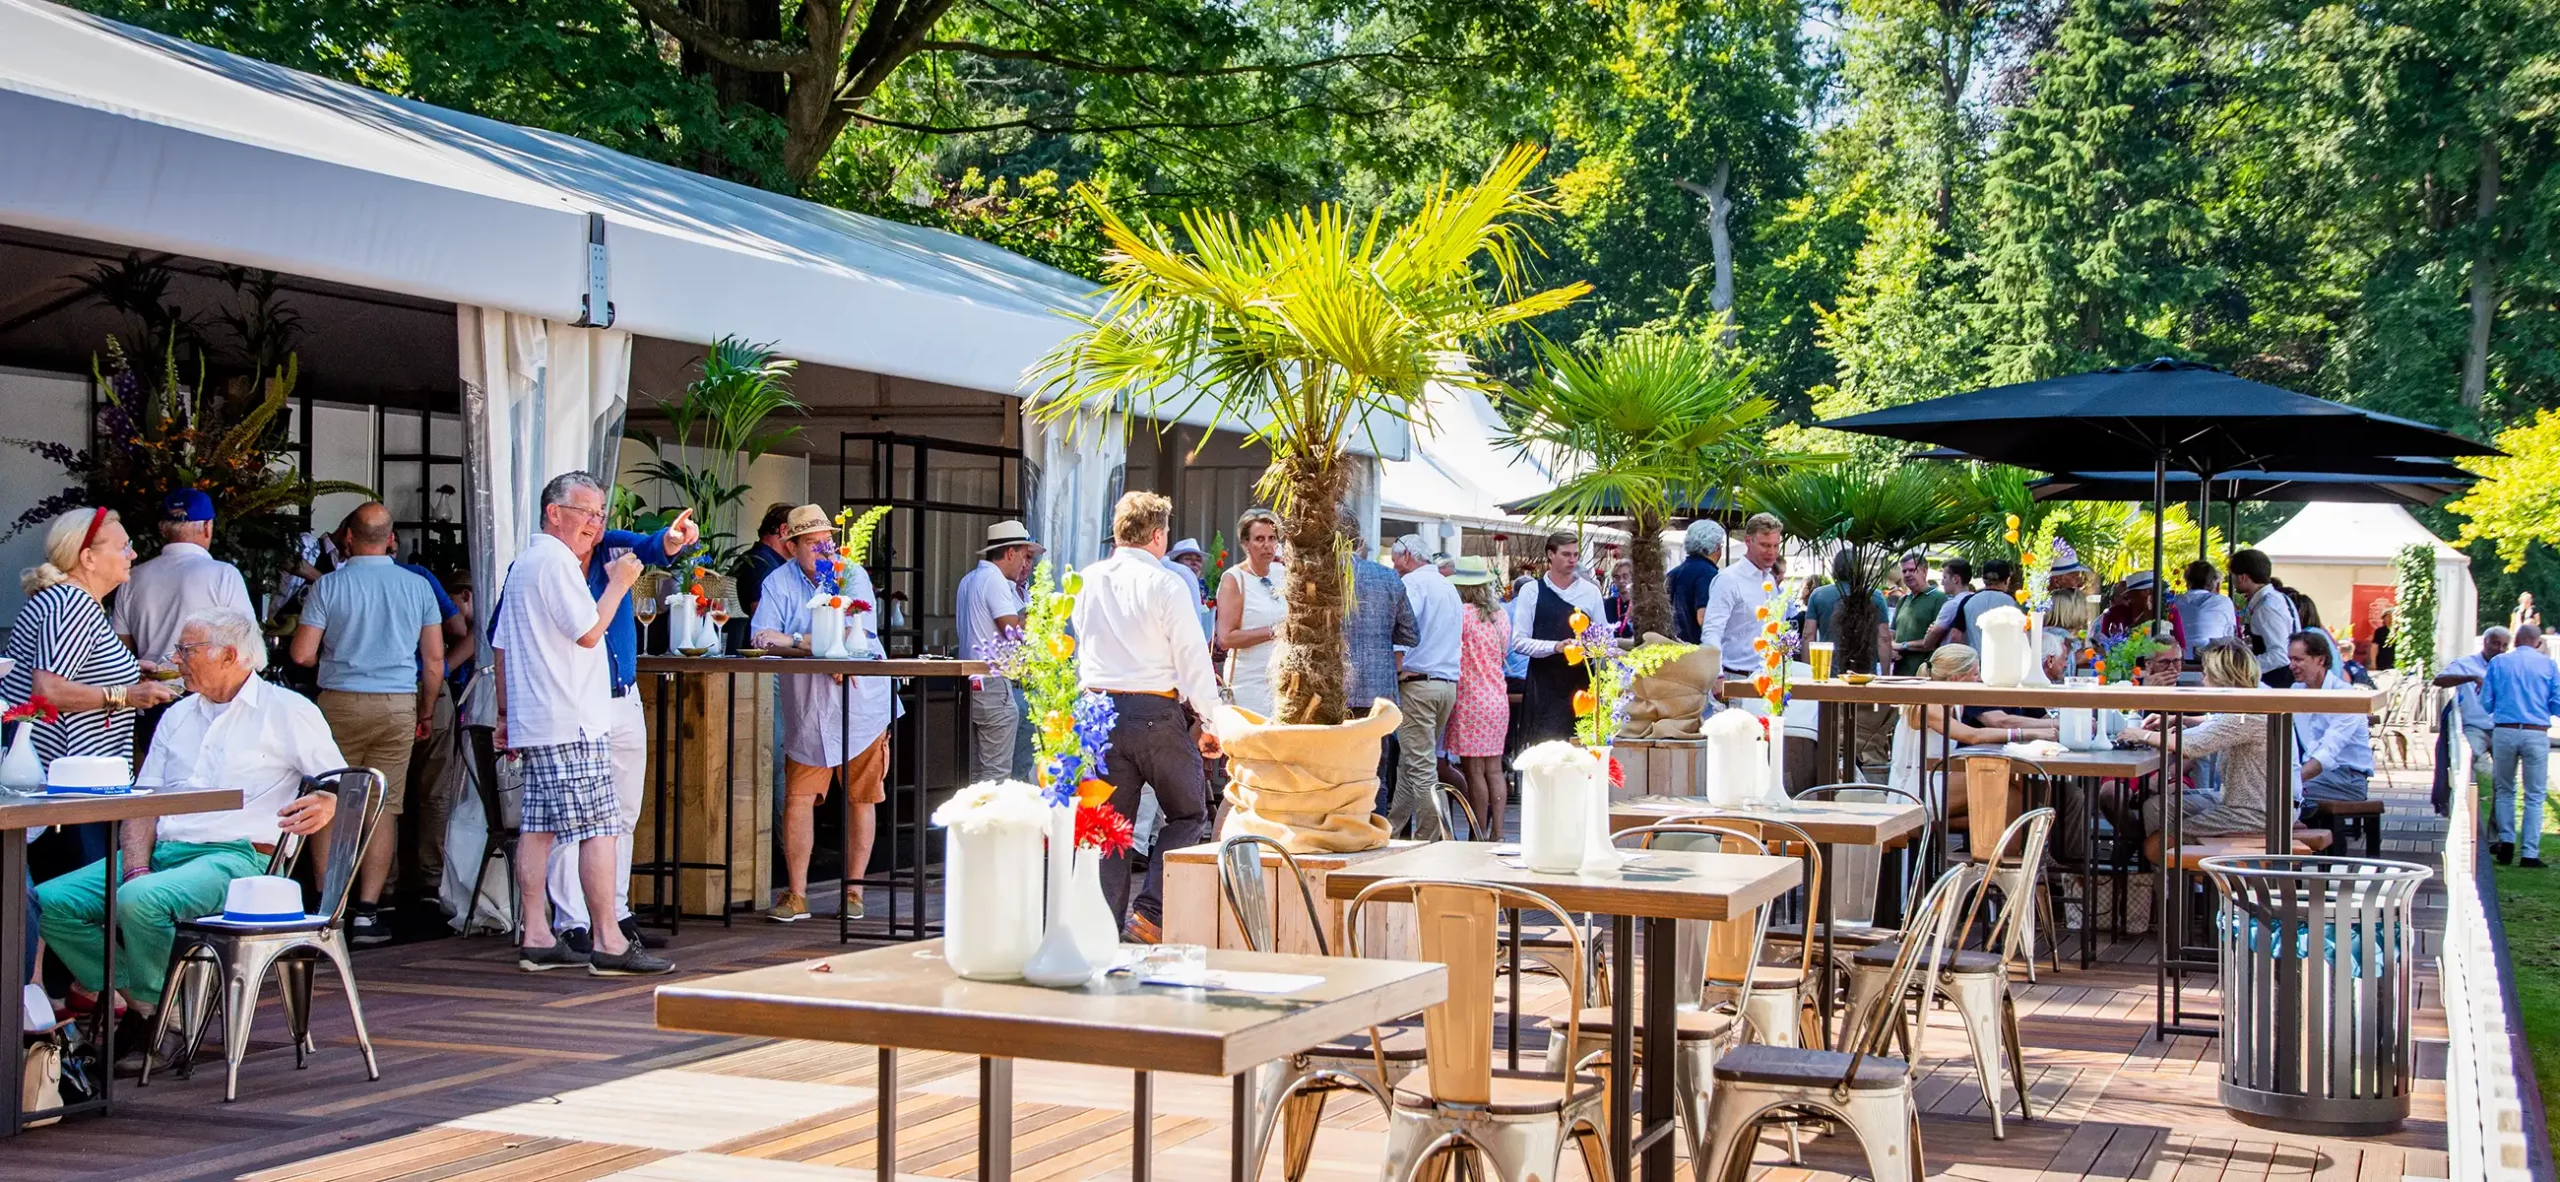 Pavillon zelt Alu VIP mit Terrasse für Gastronomie auf einem Motorsport Veranstaltung - zelte Pagode und Hallen für Events